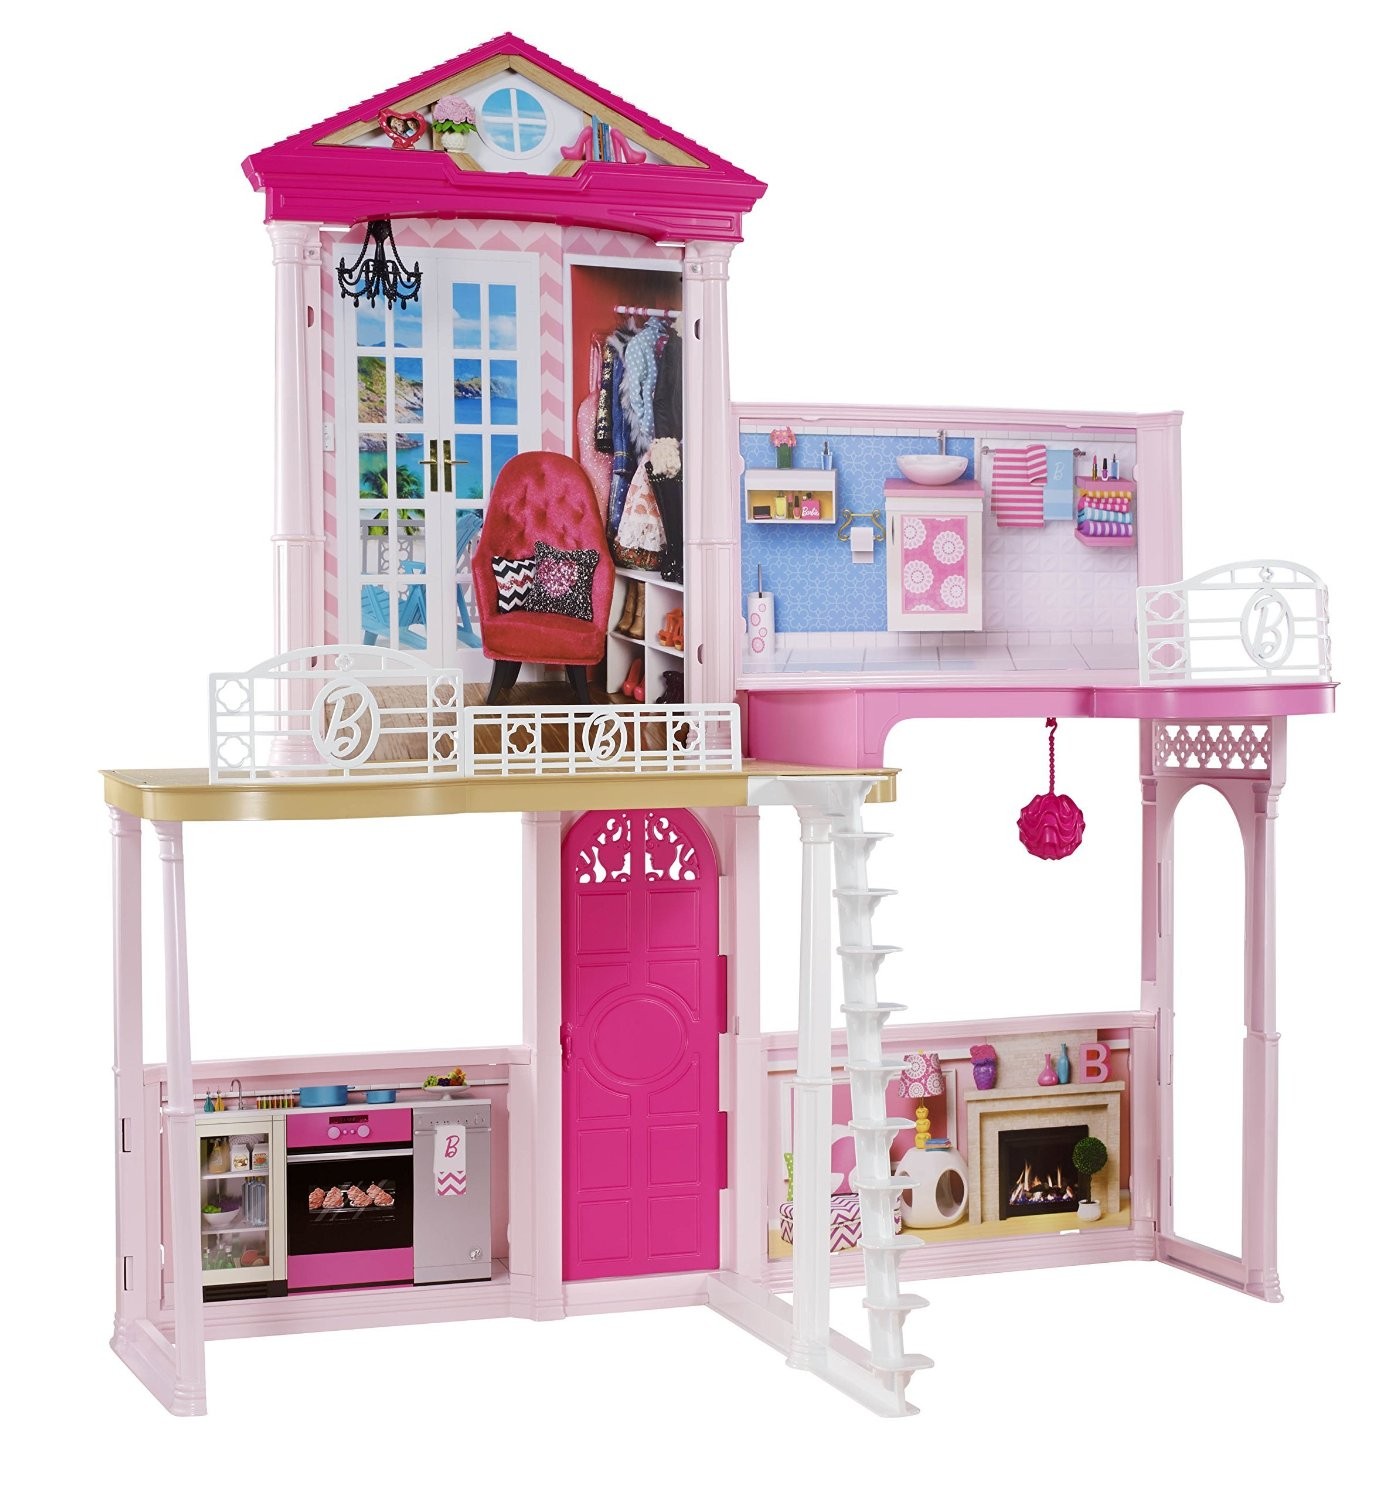 Портативный домик Барби Хепсибурада. My Fancy Life мебель для кукол. Дом мечты Барби из мультика.